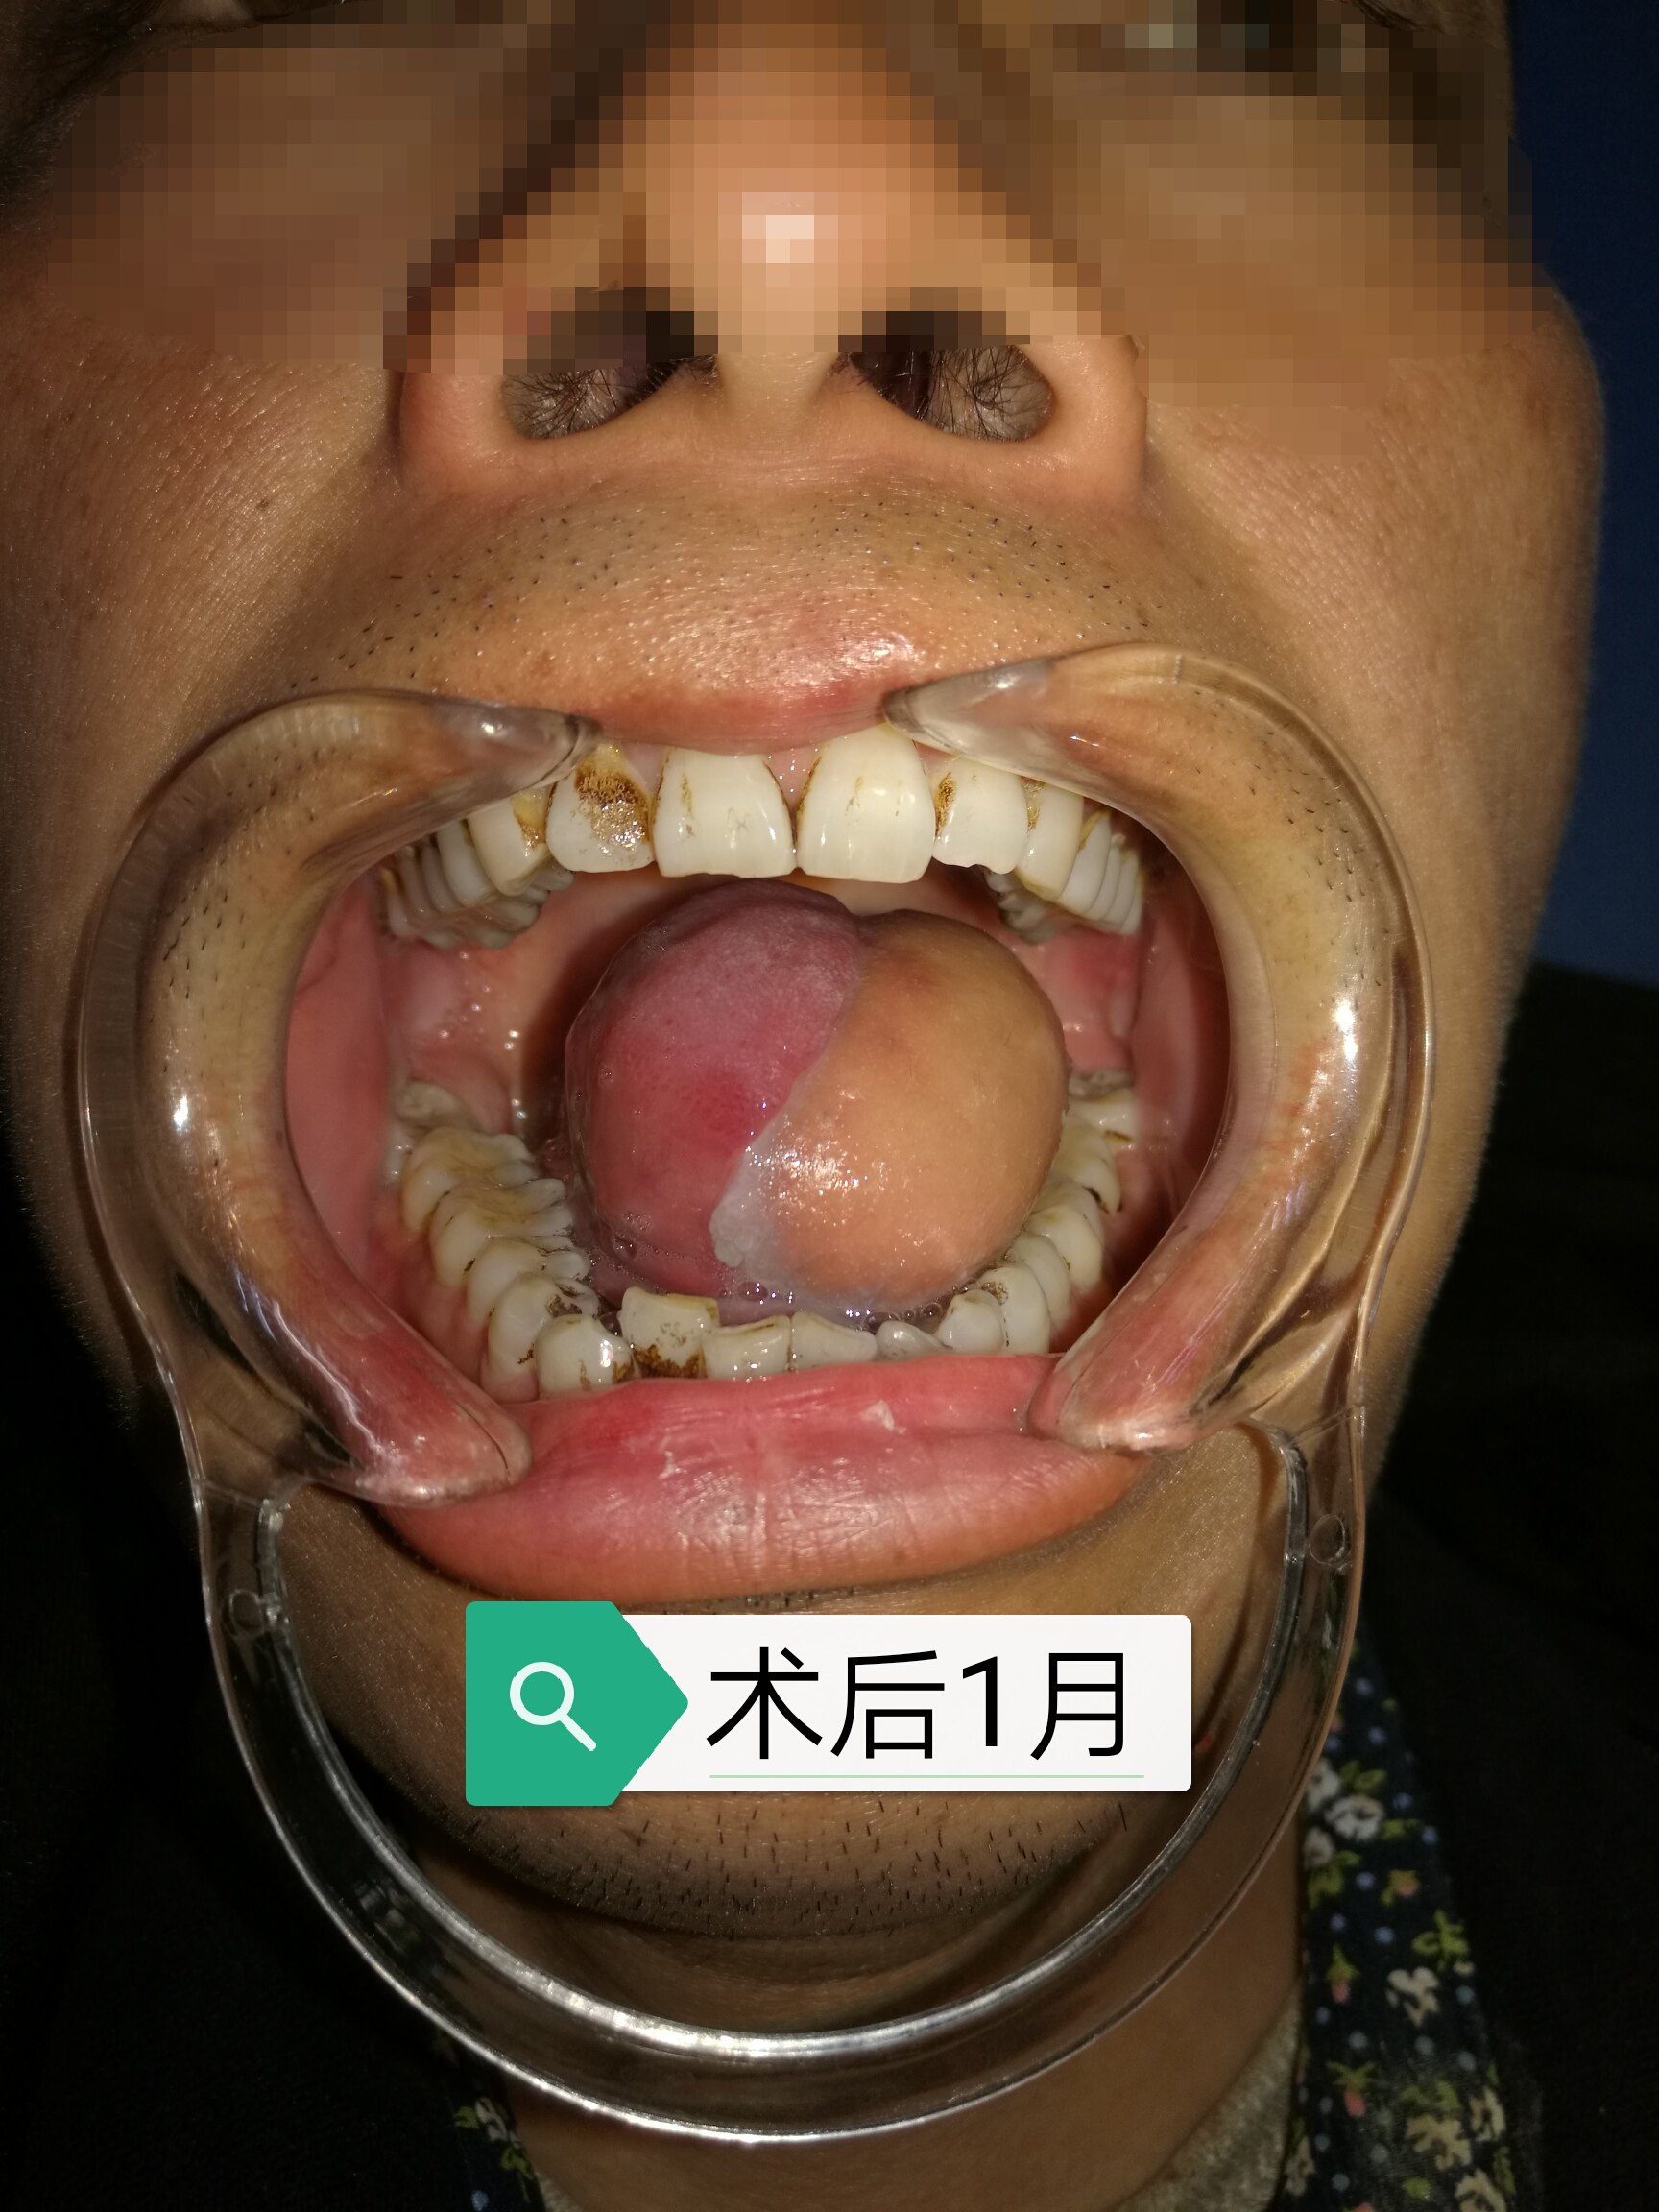 舌癌患者术前准备和术后注意事项 附图片 舌癌 舌癌手术 好大夫在线